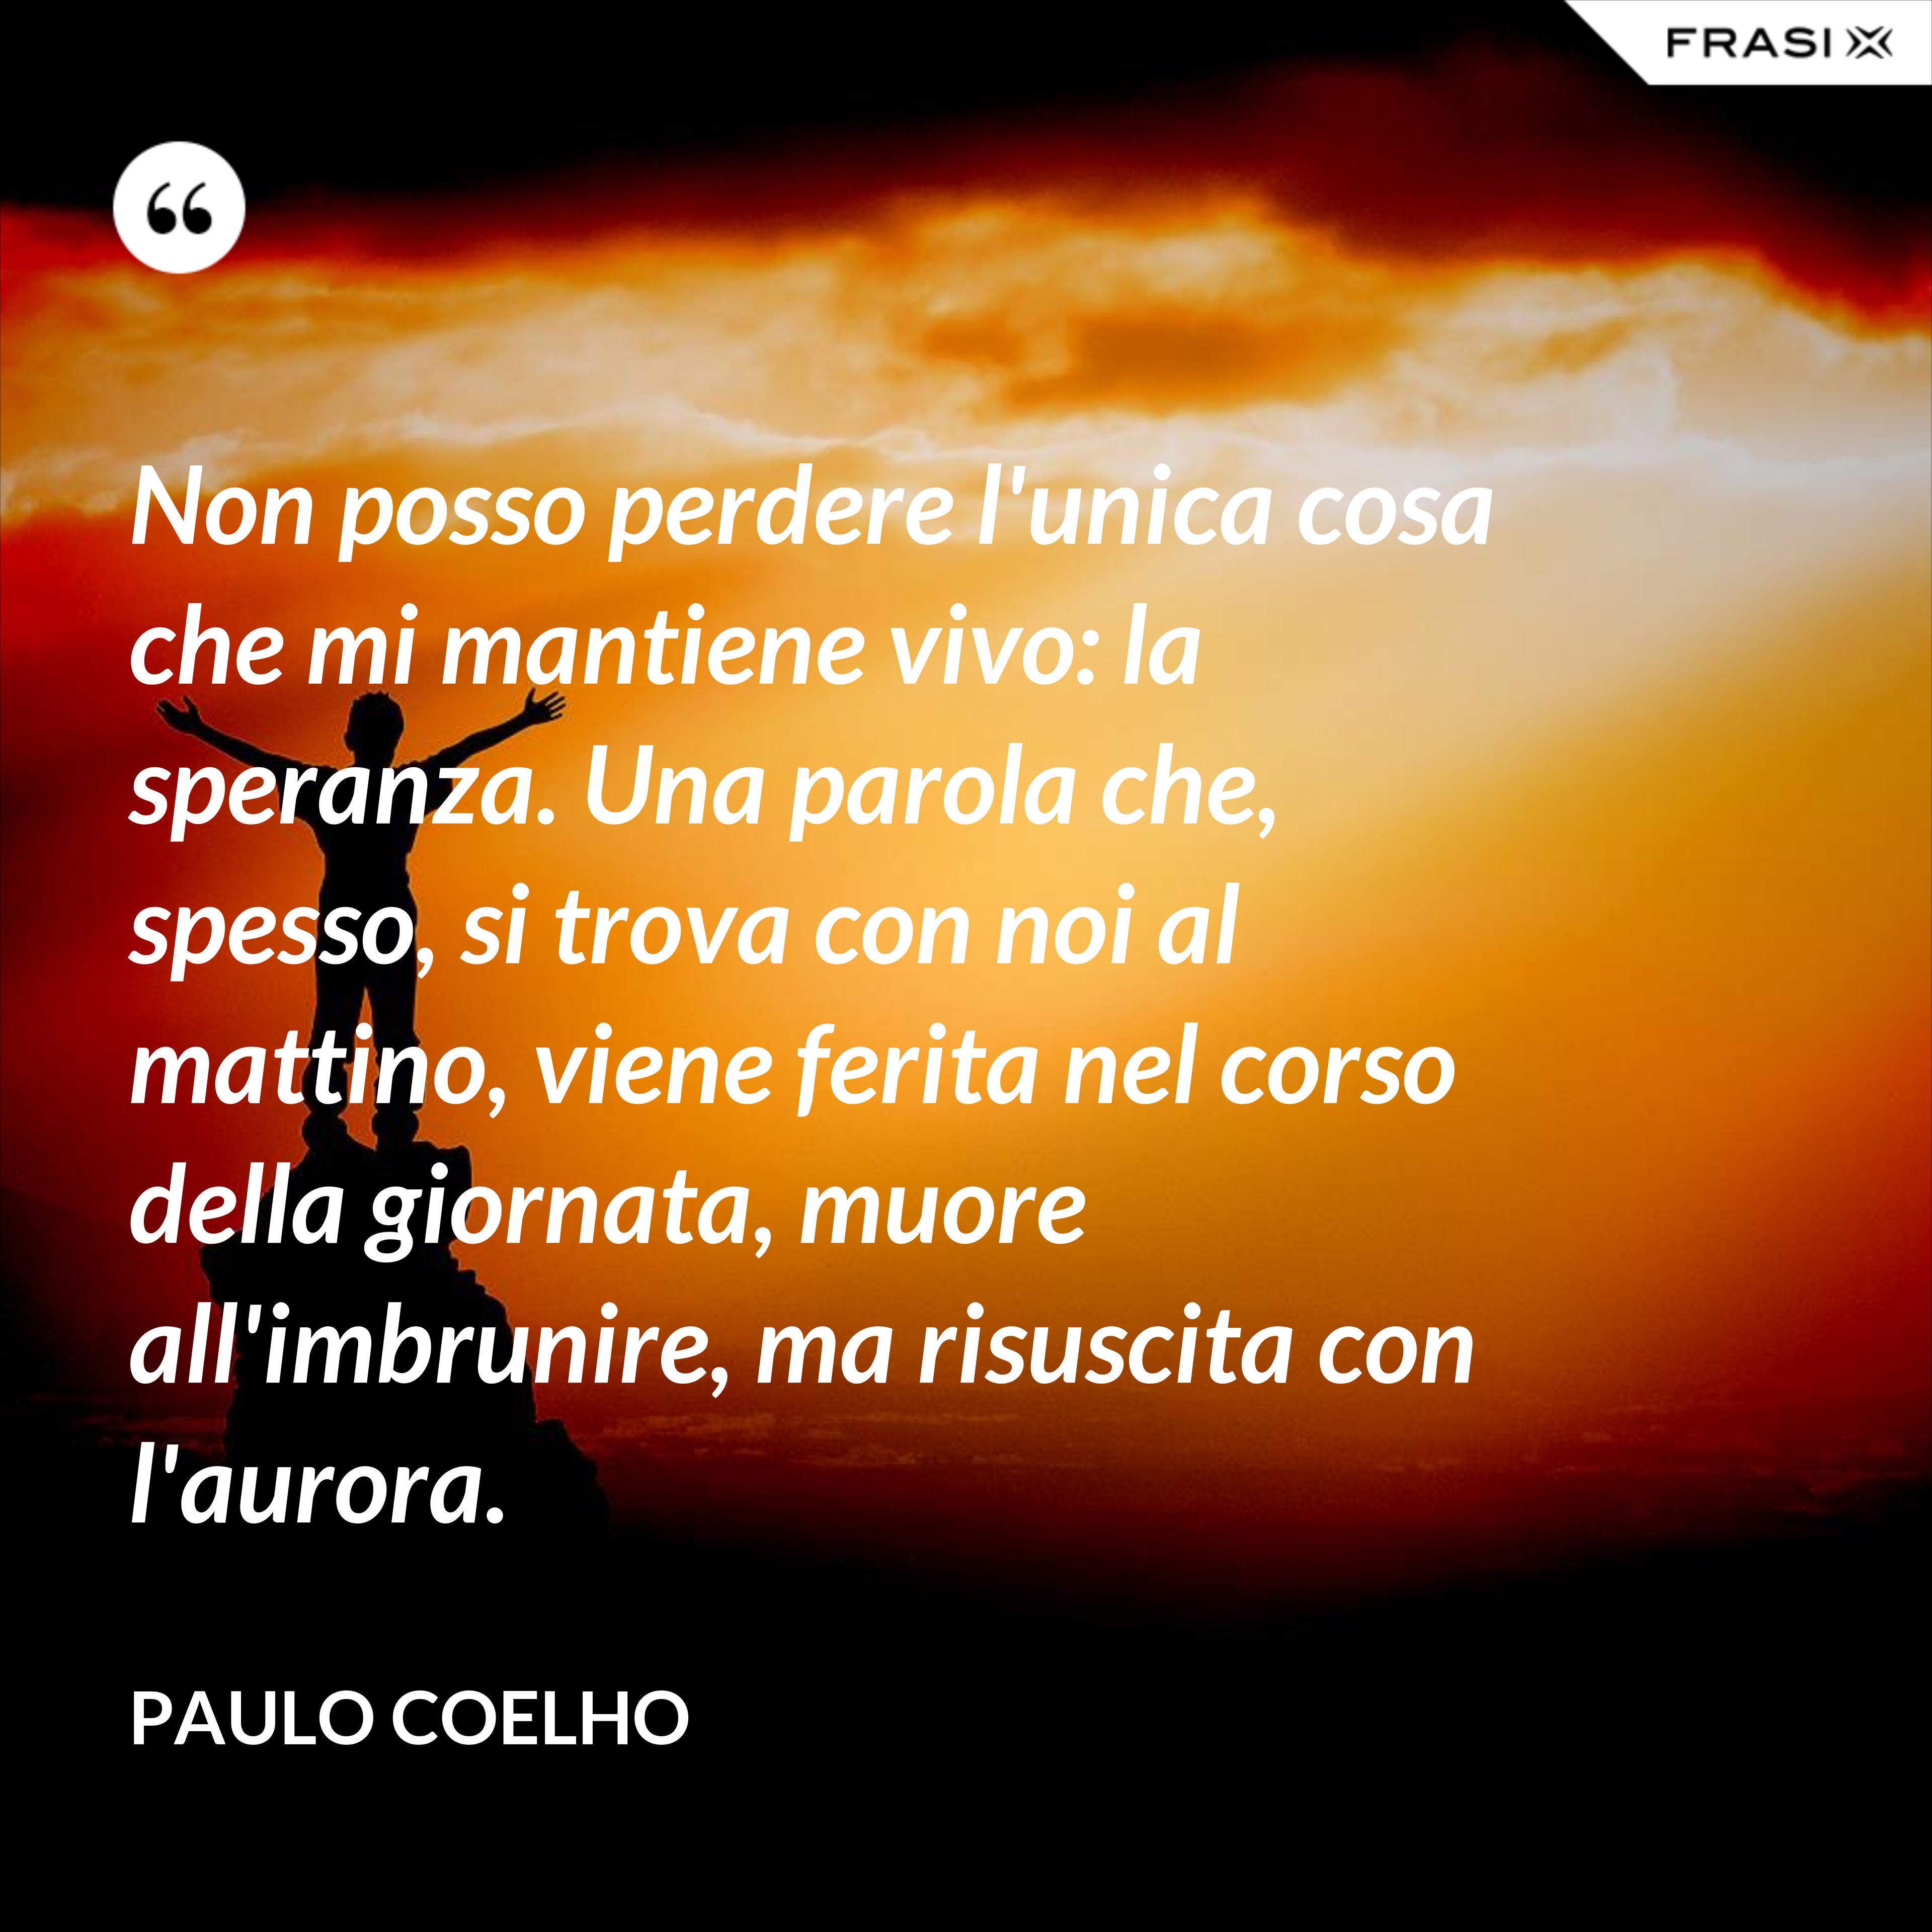 Non posso perdere l'unica cosa che mi mantiene vivo: la speranza. Una parola che, spesso, si trova con noi al mattino, viene ferita nel corso della giornata, muore all'imbrunire, ma risuscita con l'aurora. - Paulo Coelho